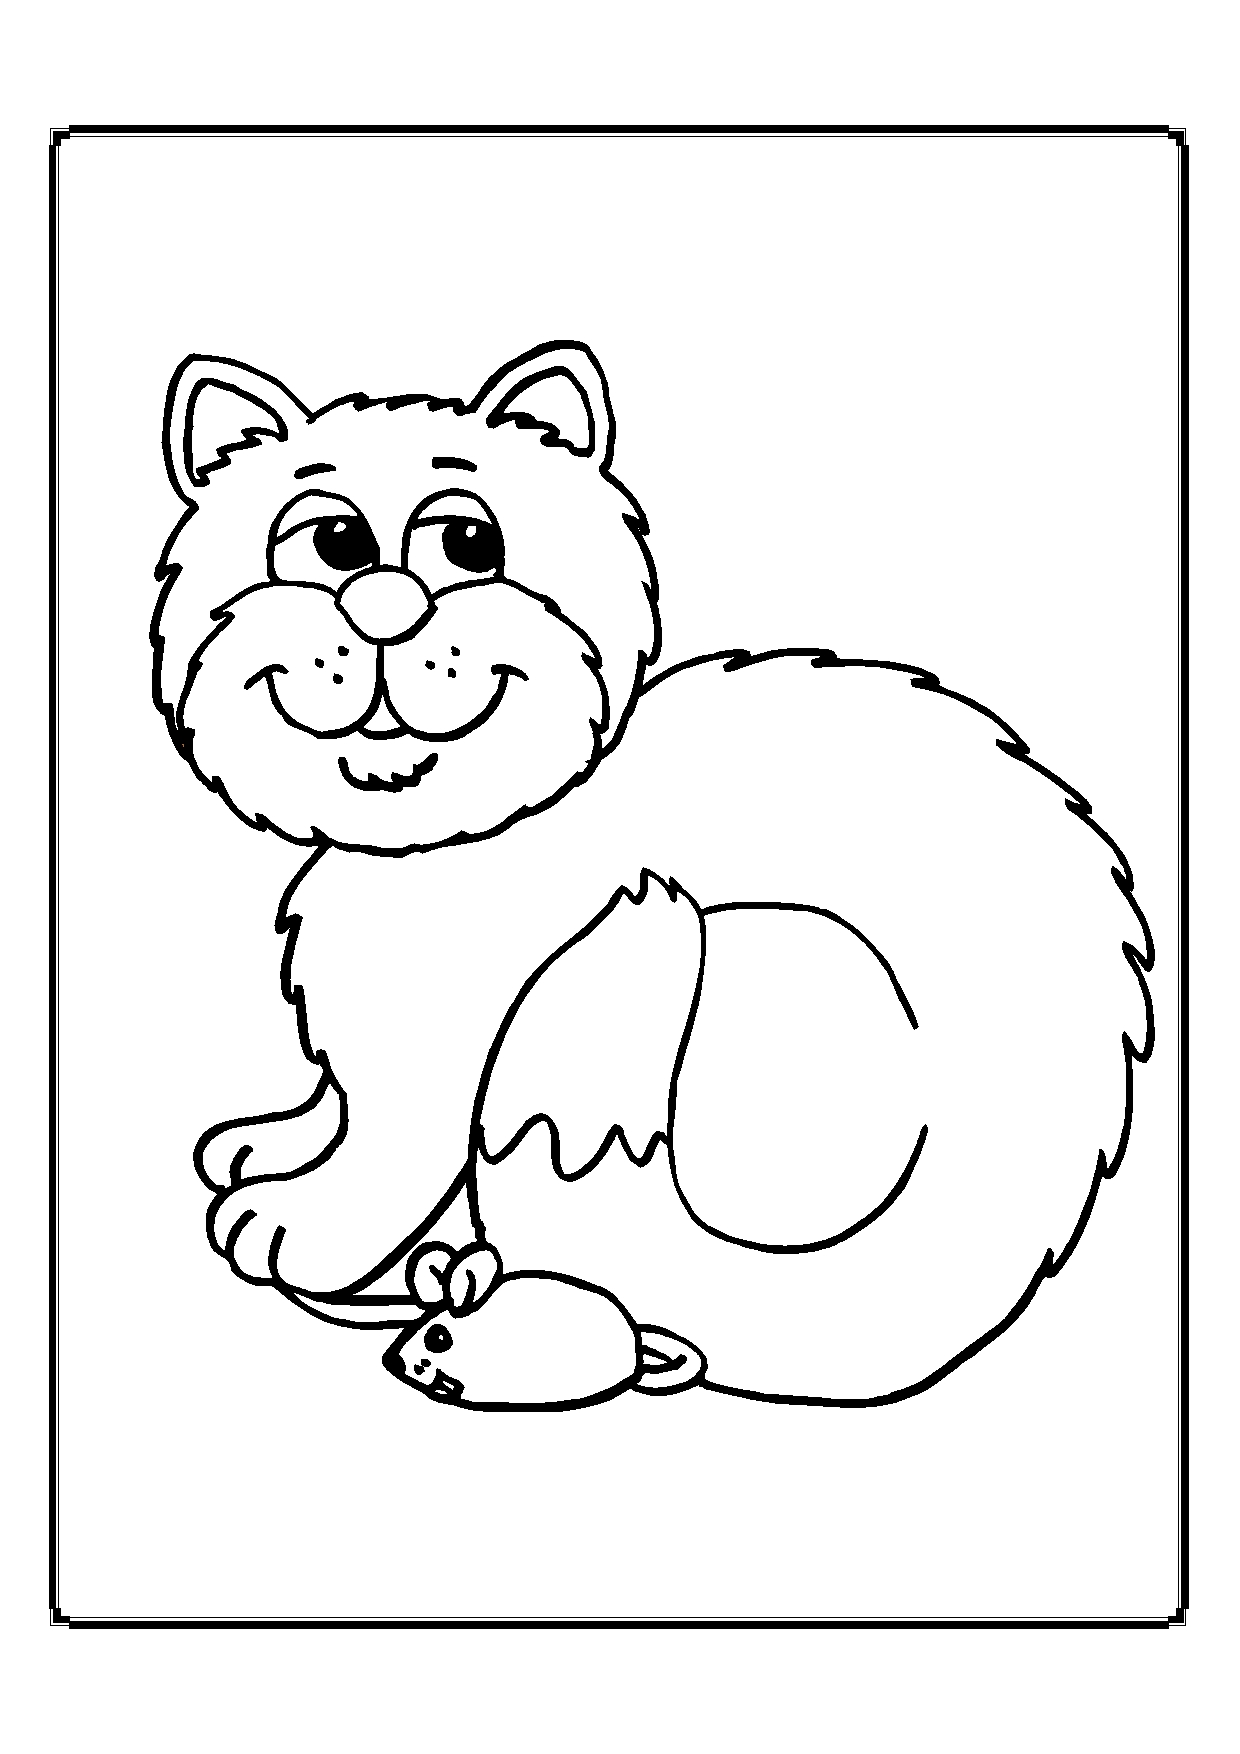 Kolorowanka kot puszysty z białą końcówką ogona siedzi zadowolony z brodą przy myszce